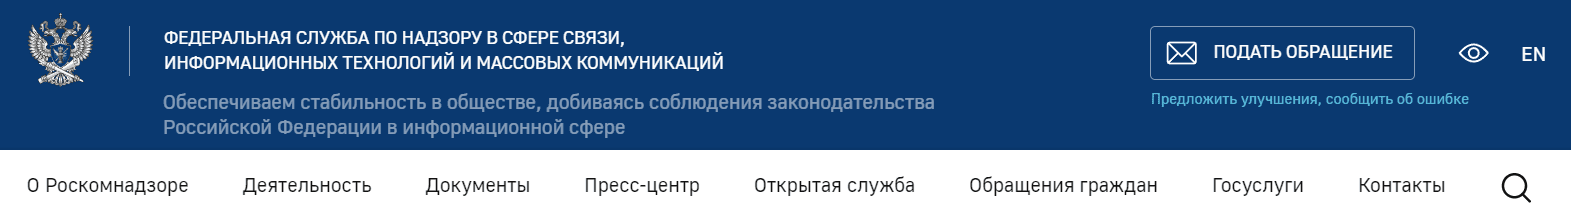 Федеральная служба по надзору в сфере связи Роскомнадзор (rkn.gov.ru)